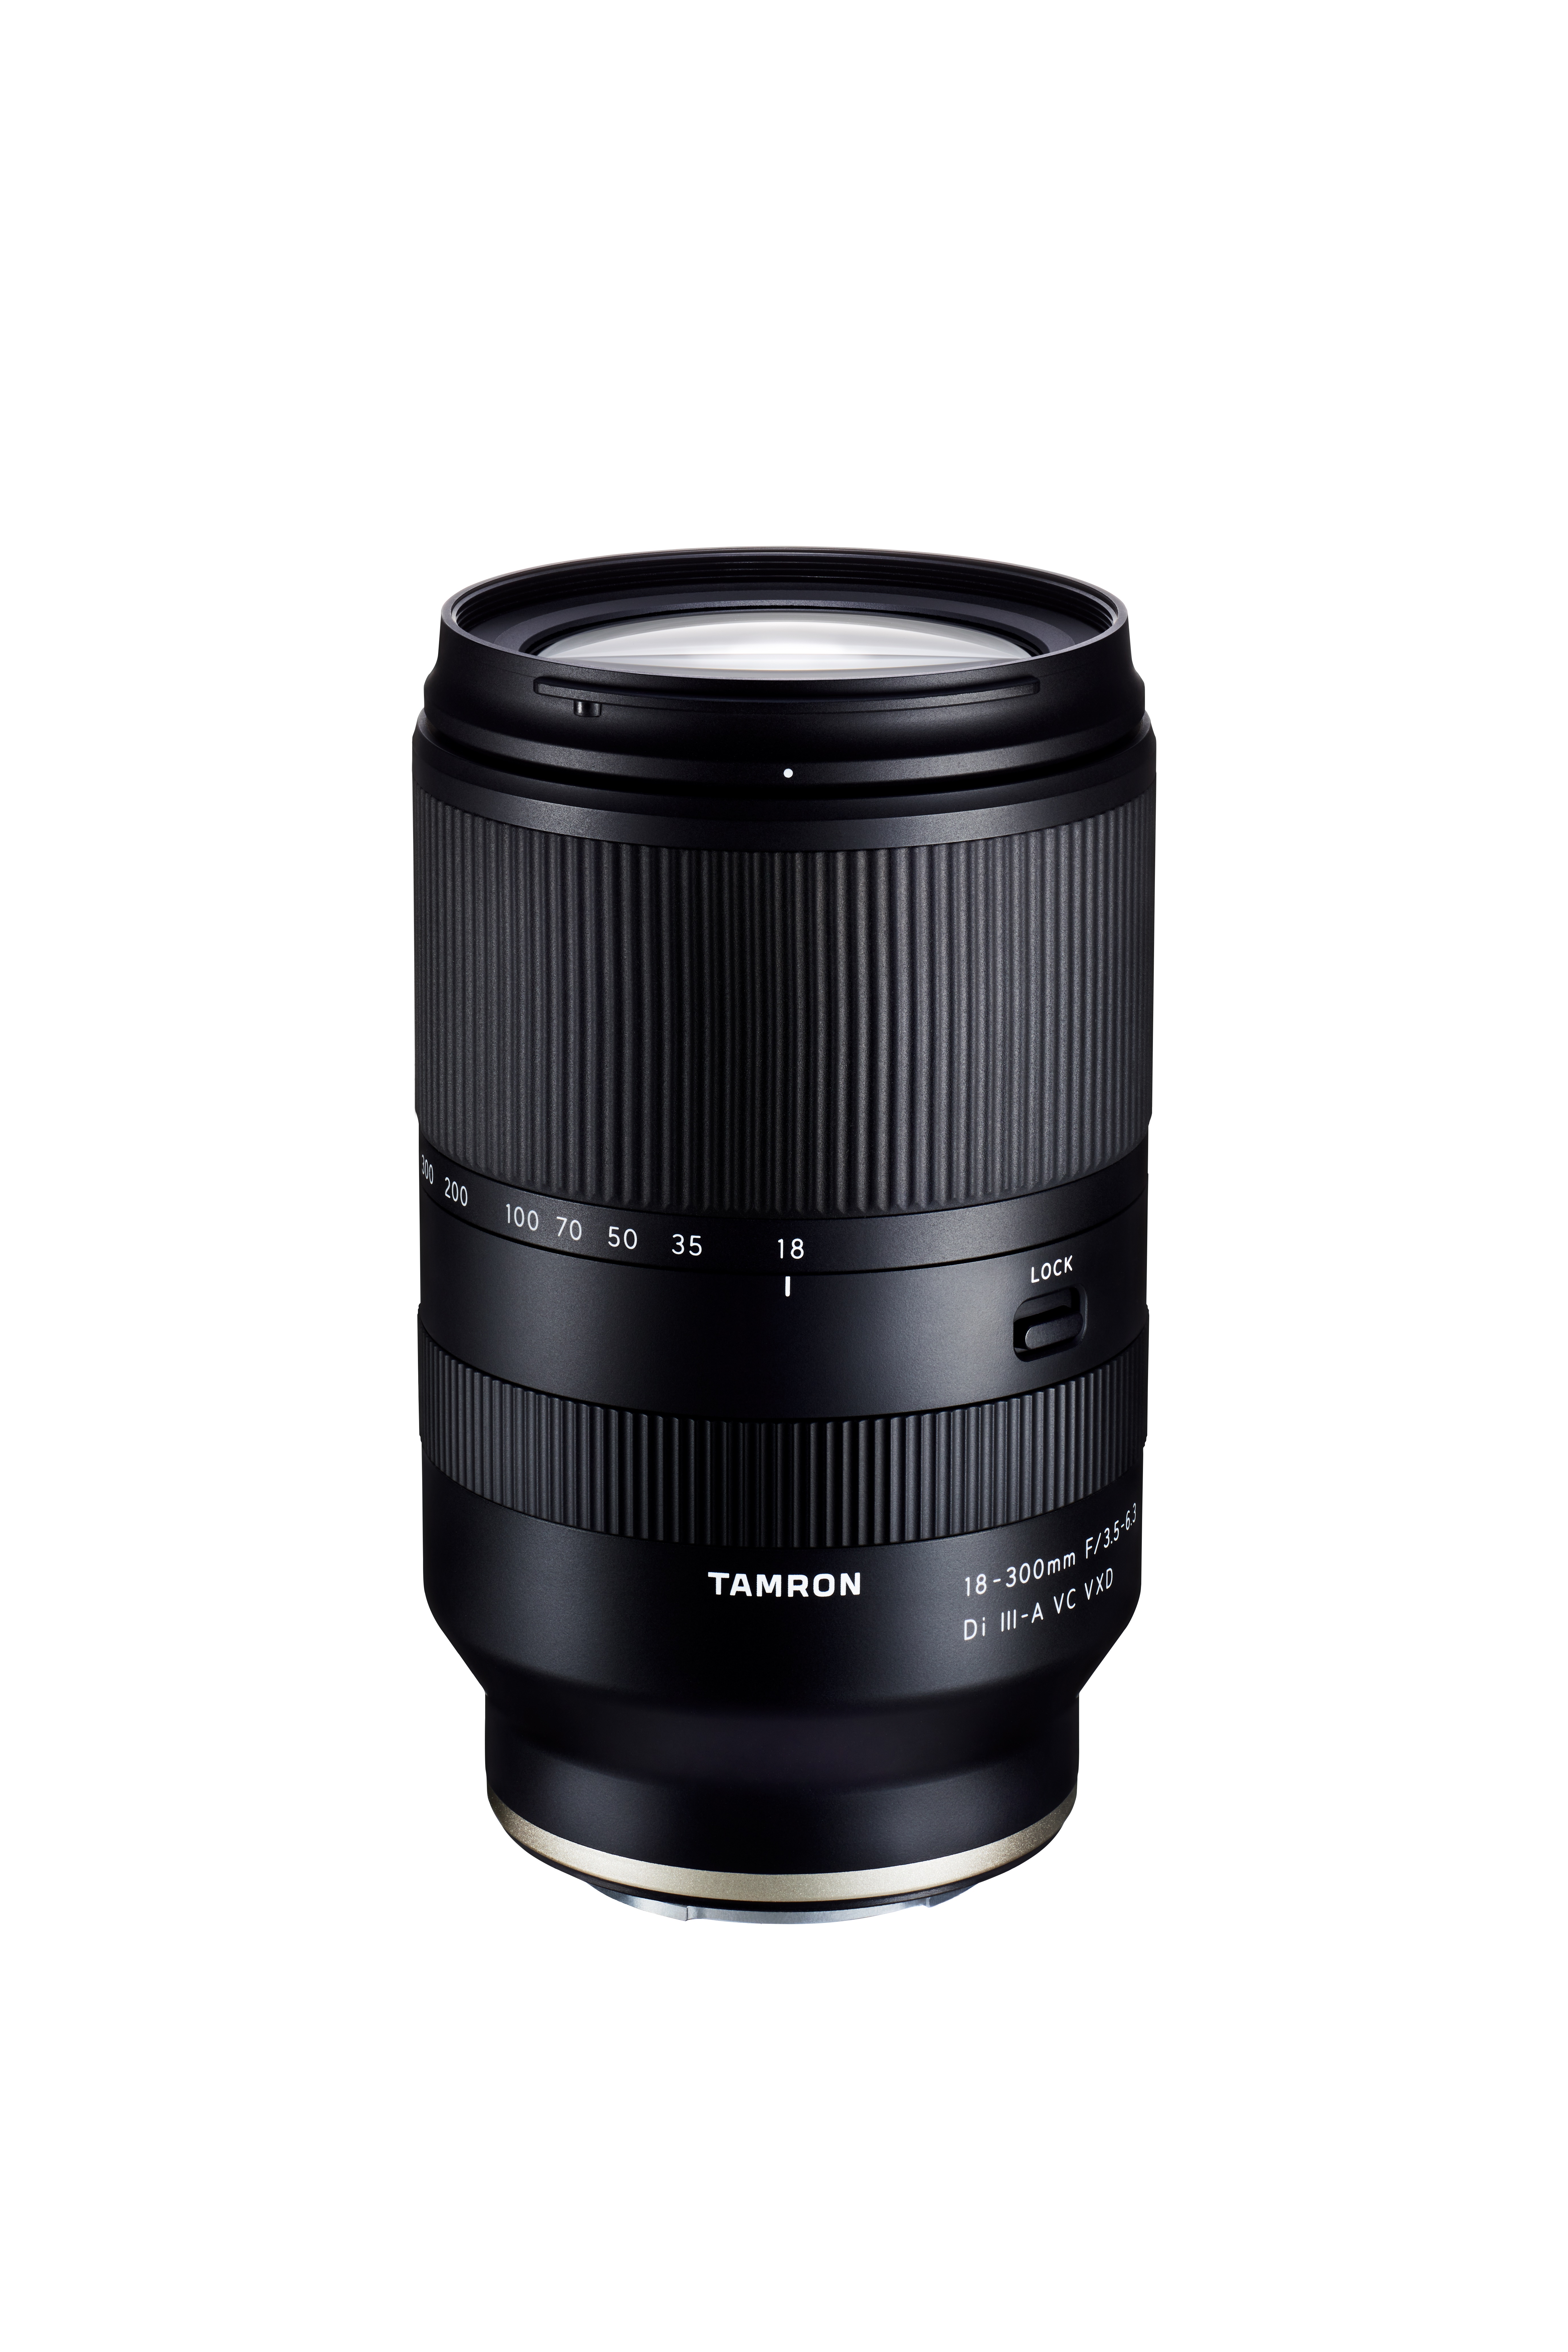 市場買付TAMRON 18-300mm F/3.5-6.3 Di Ⅲ-A VC VXD レンズ(ズーム)